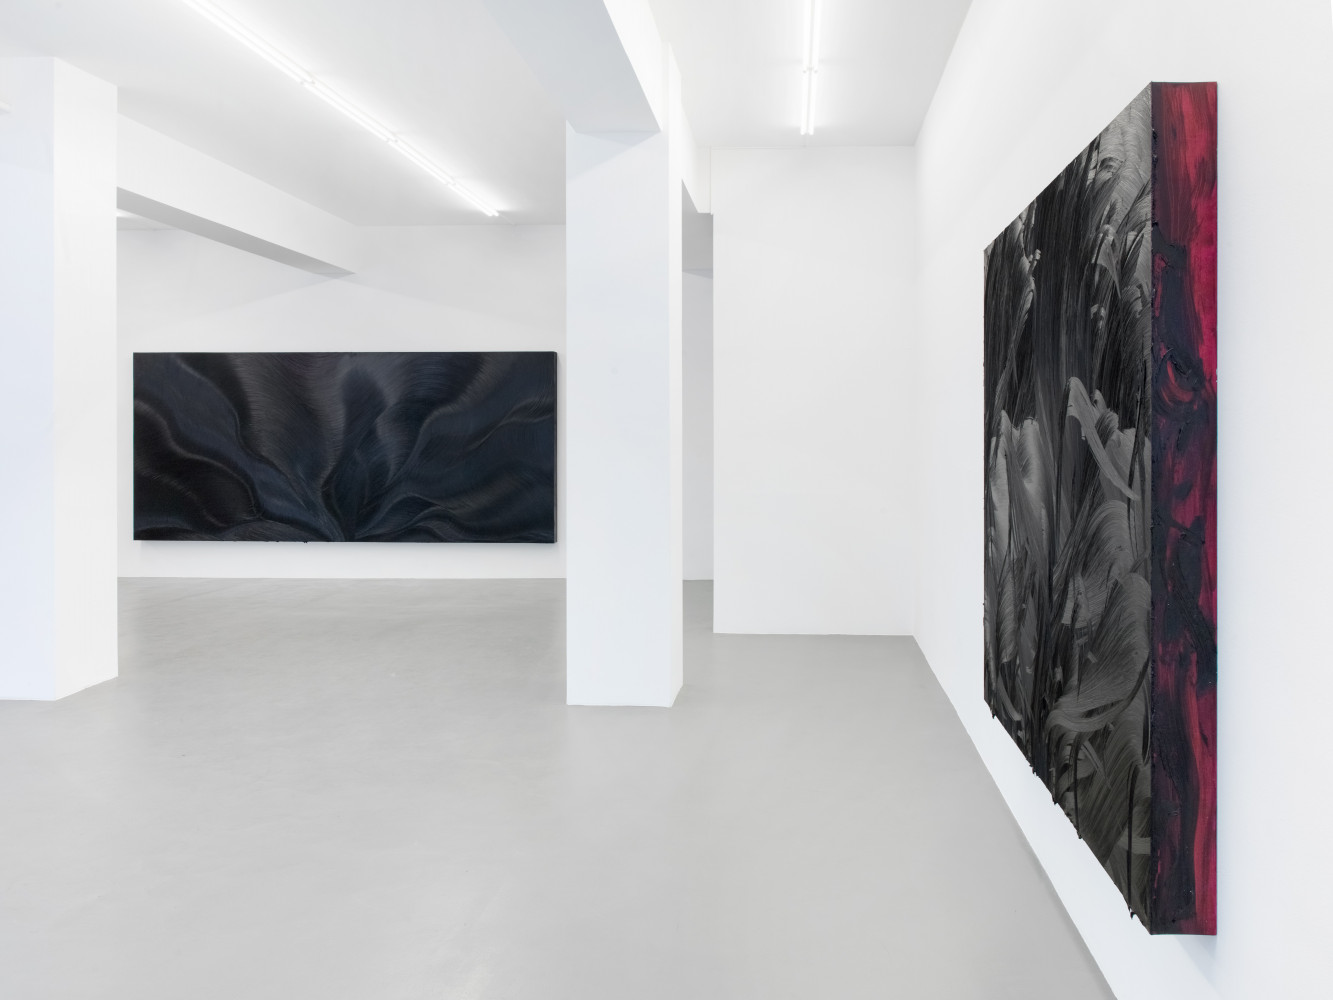 Jason Martin, ‘Vertigo’, Installationsansicht, Buchmann Galerie, 2018